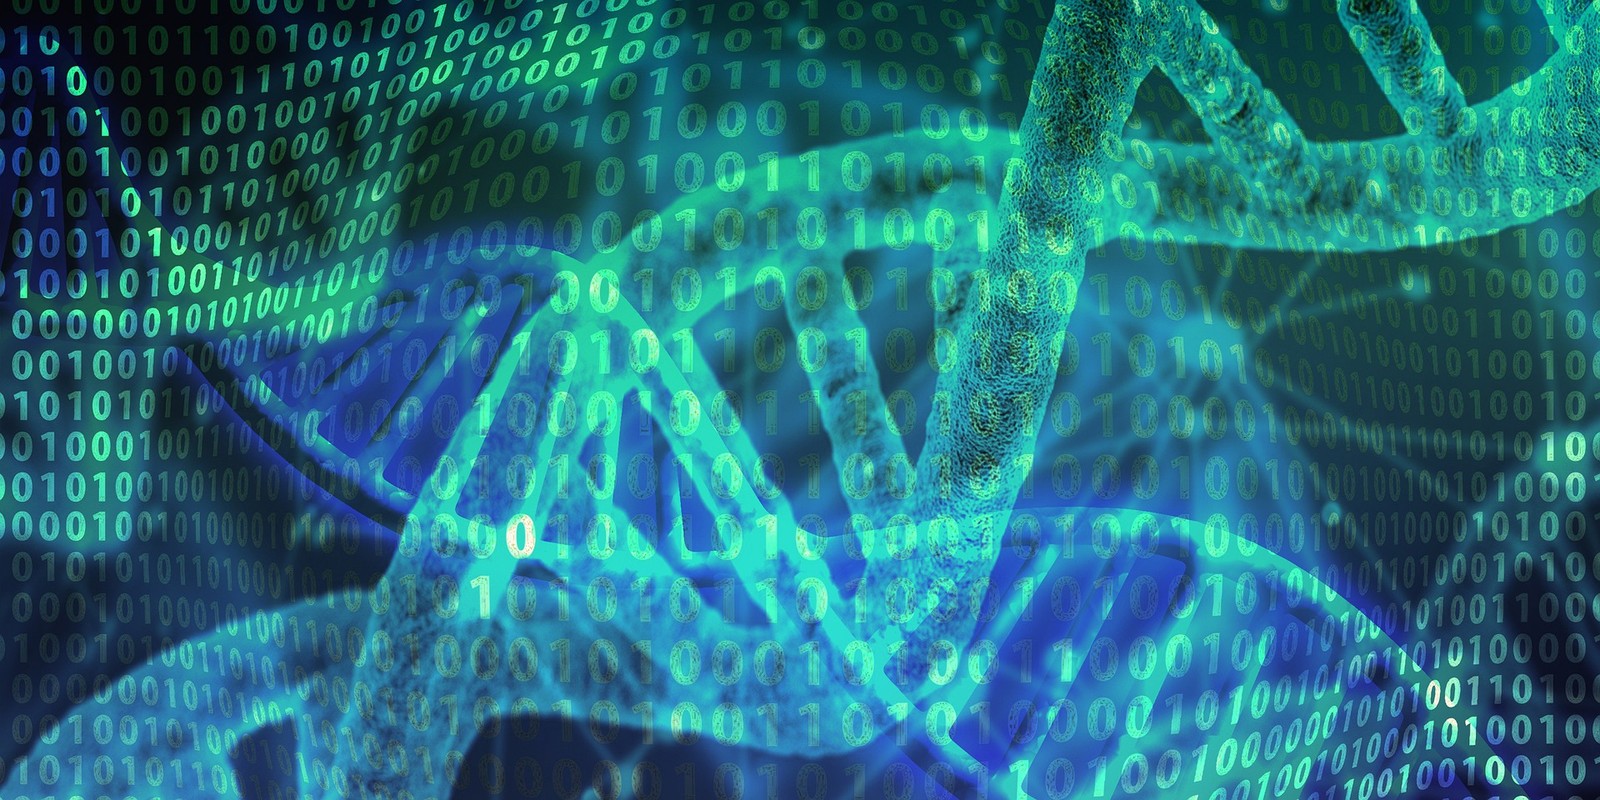 DNA jako nośnik danych coraz bliżej? Nowe ustalenia
